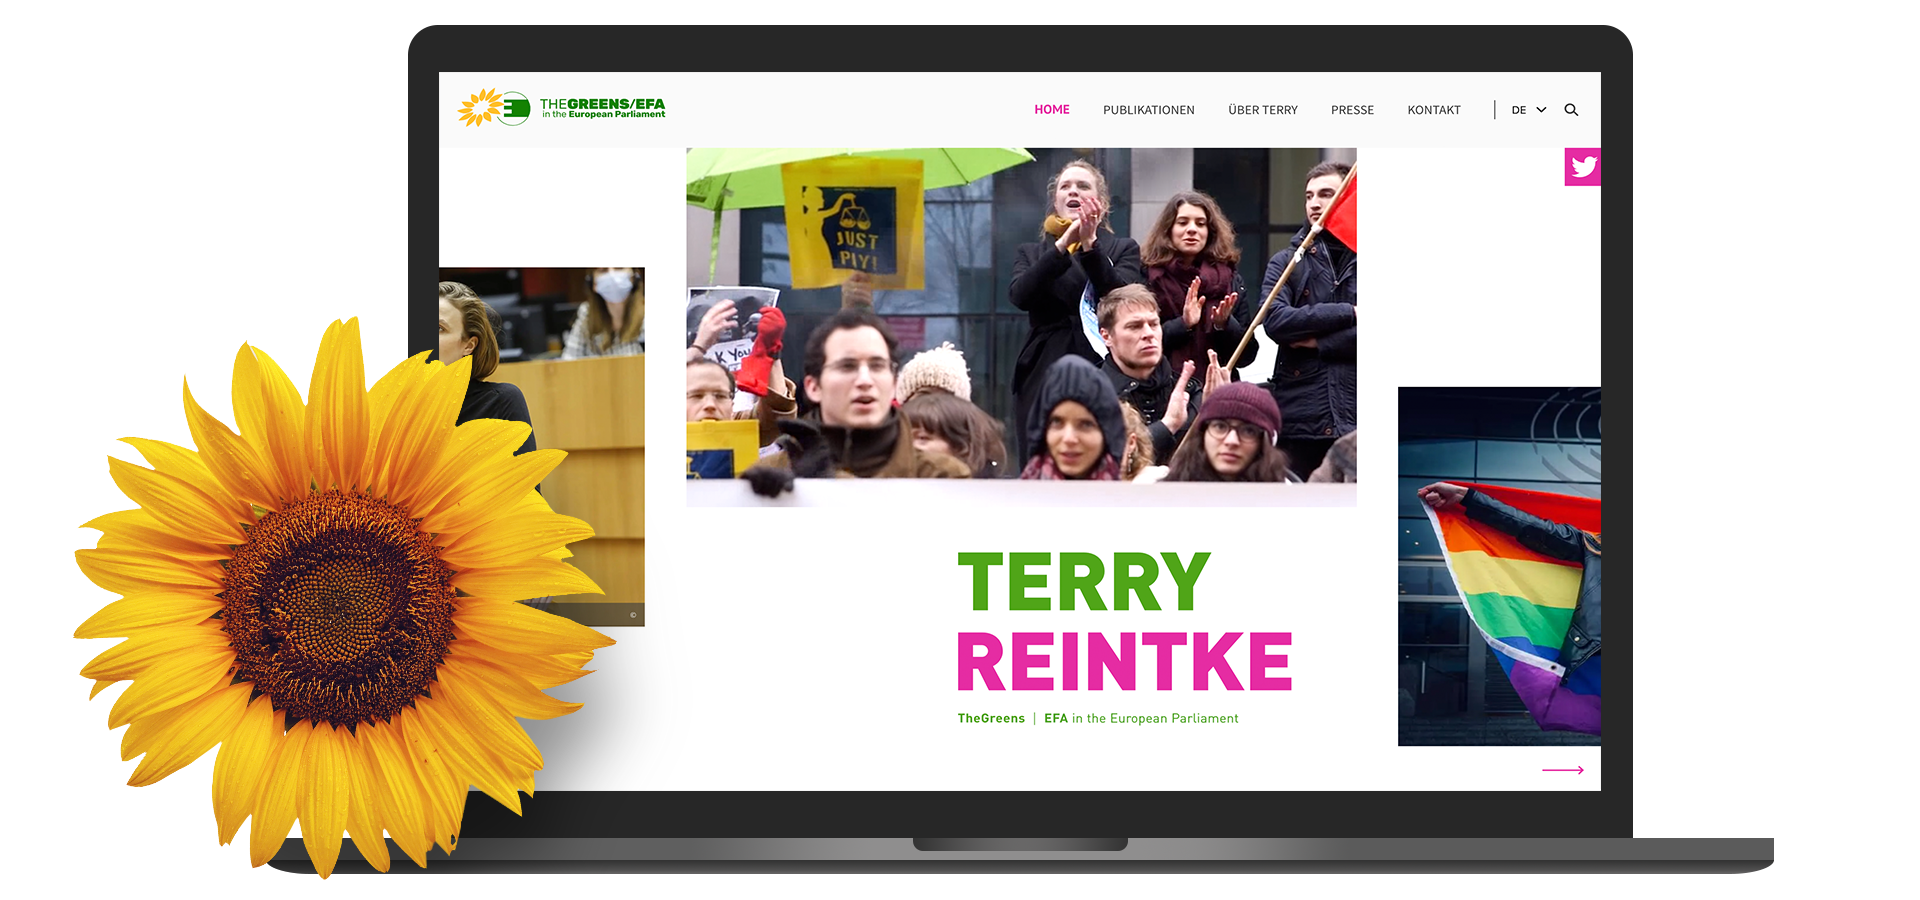 Das Bild zeigt einen Laptop mit der Startseite von Terry Reintkes Website und einer Sonnenblume davor.